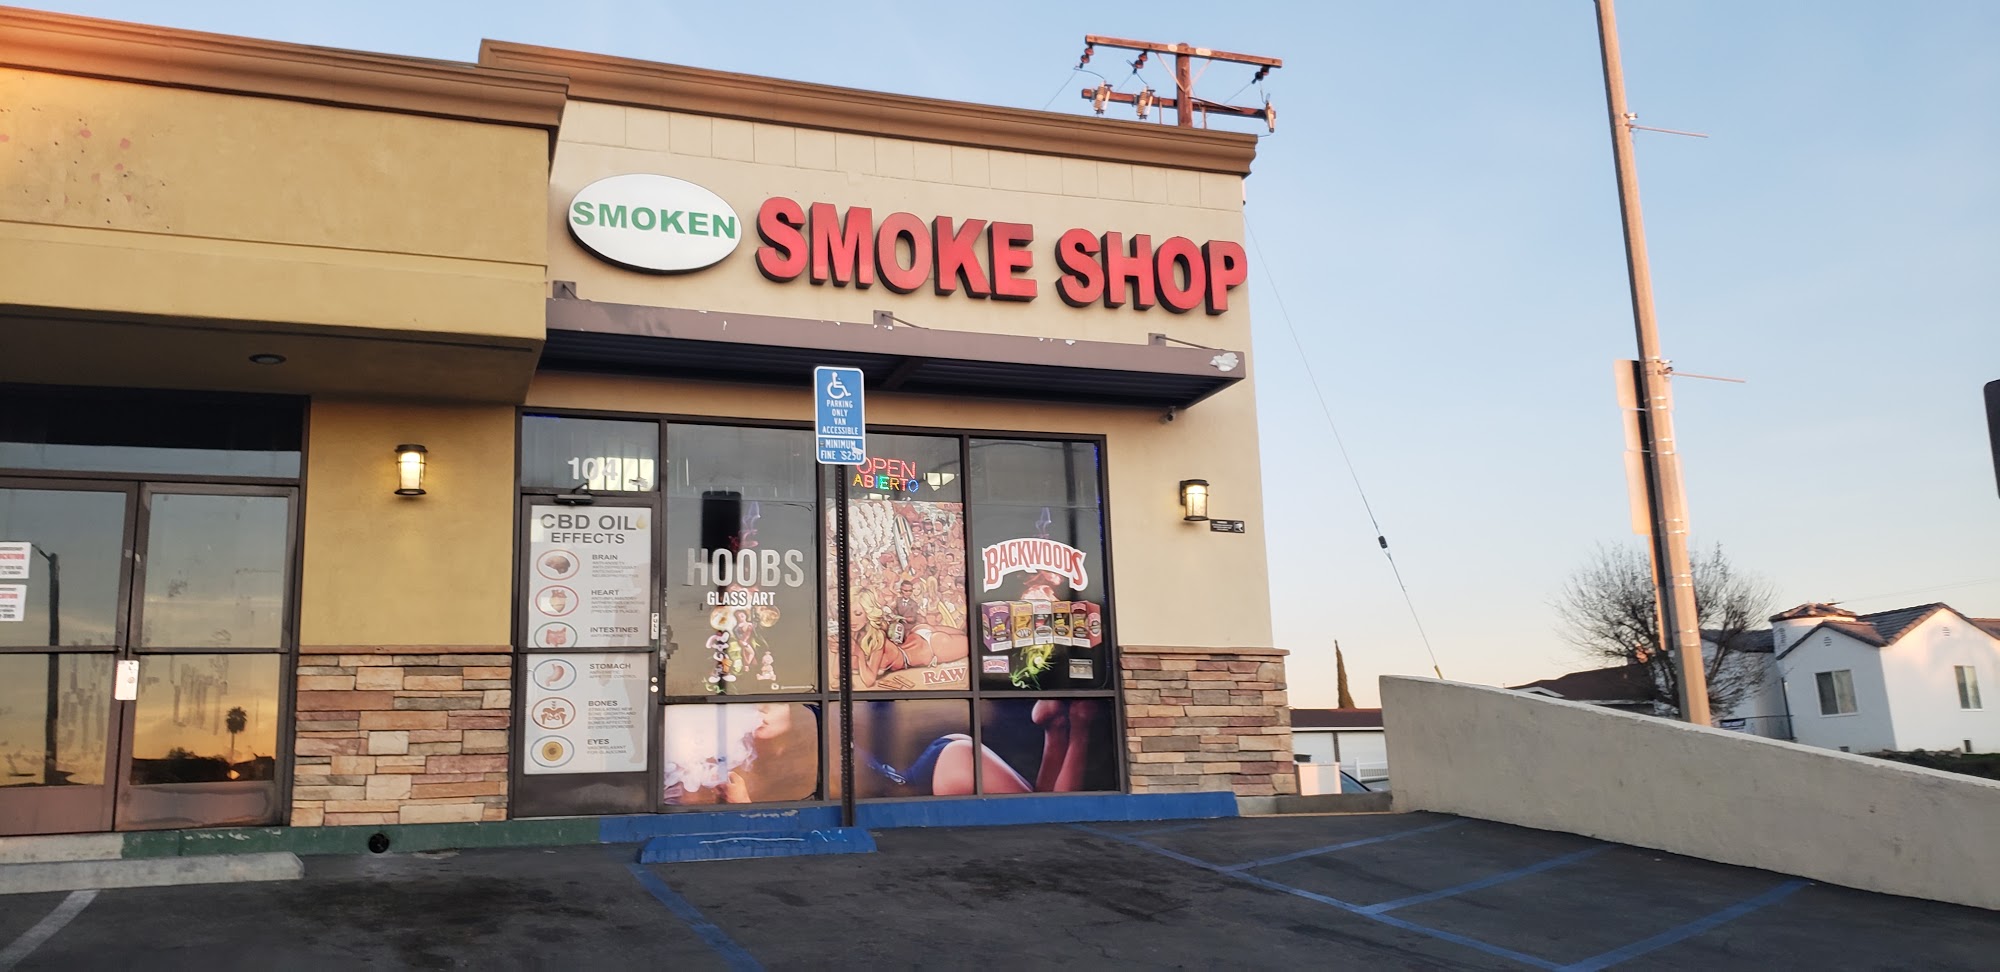 Smoken Smoke Shop